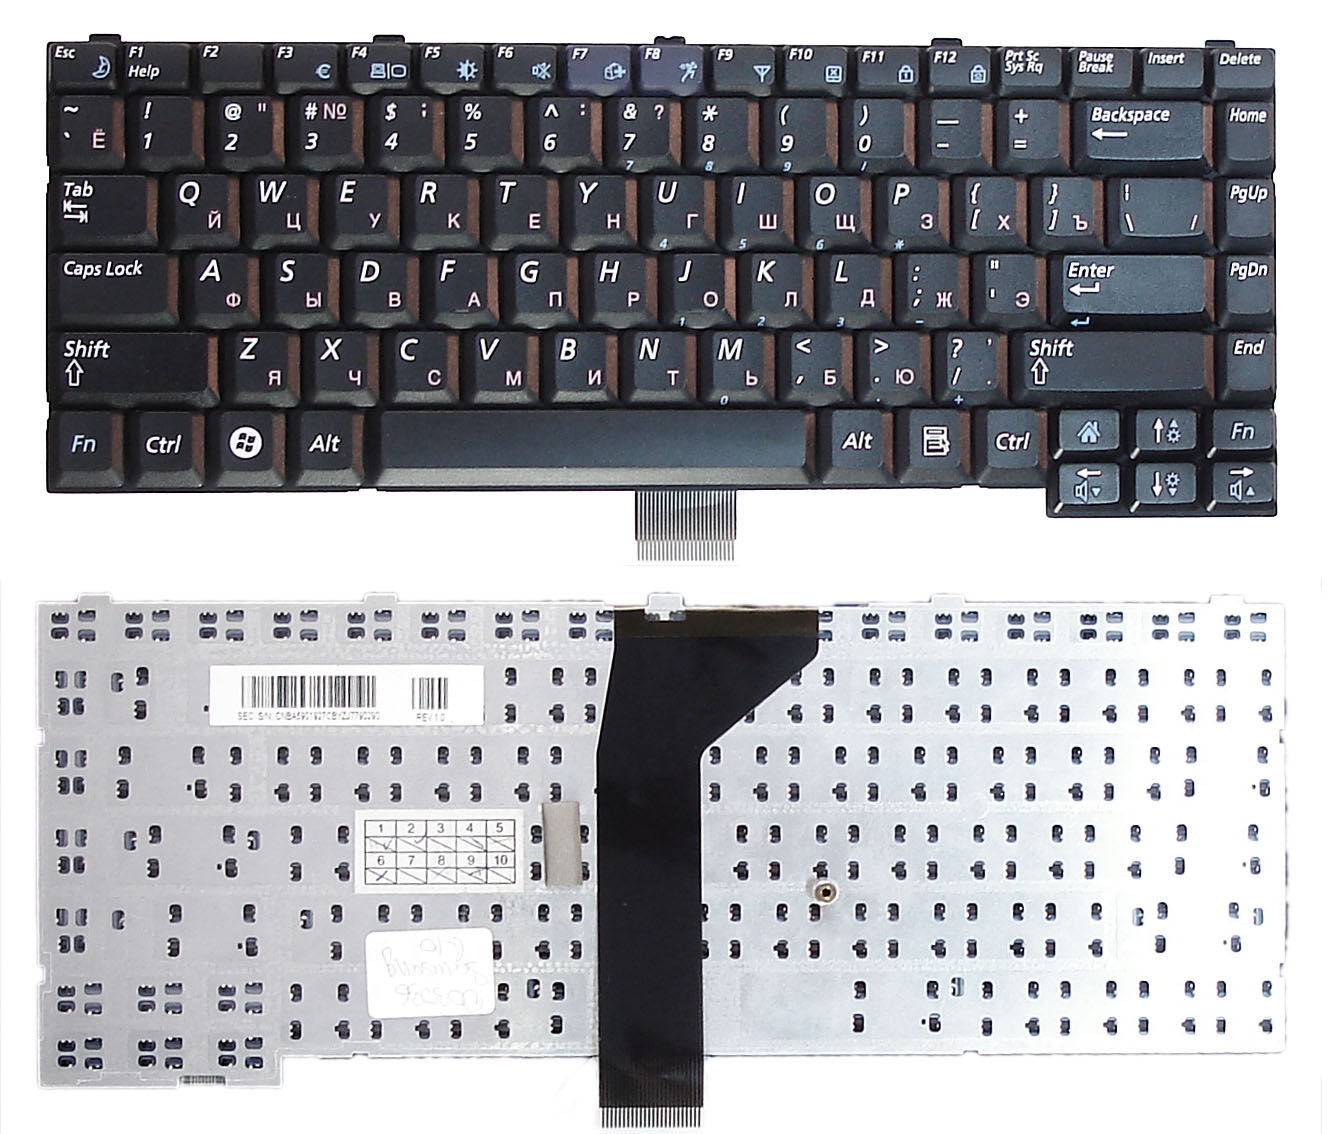 Клавиатура для ноутбука Samsung G10 G15 черная